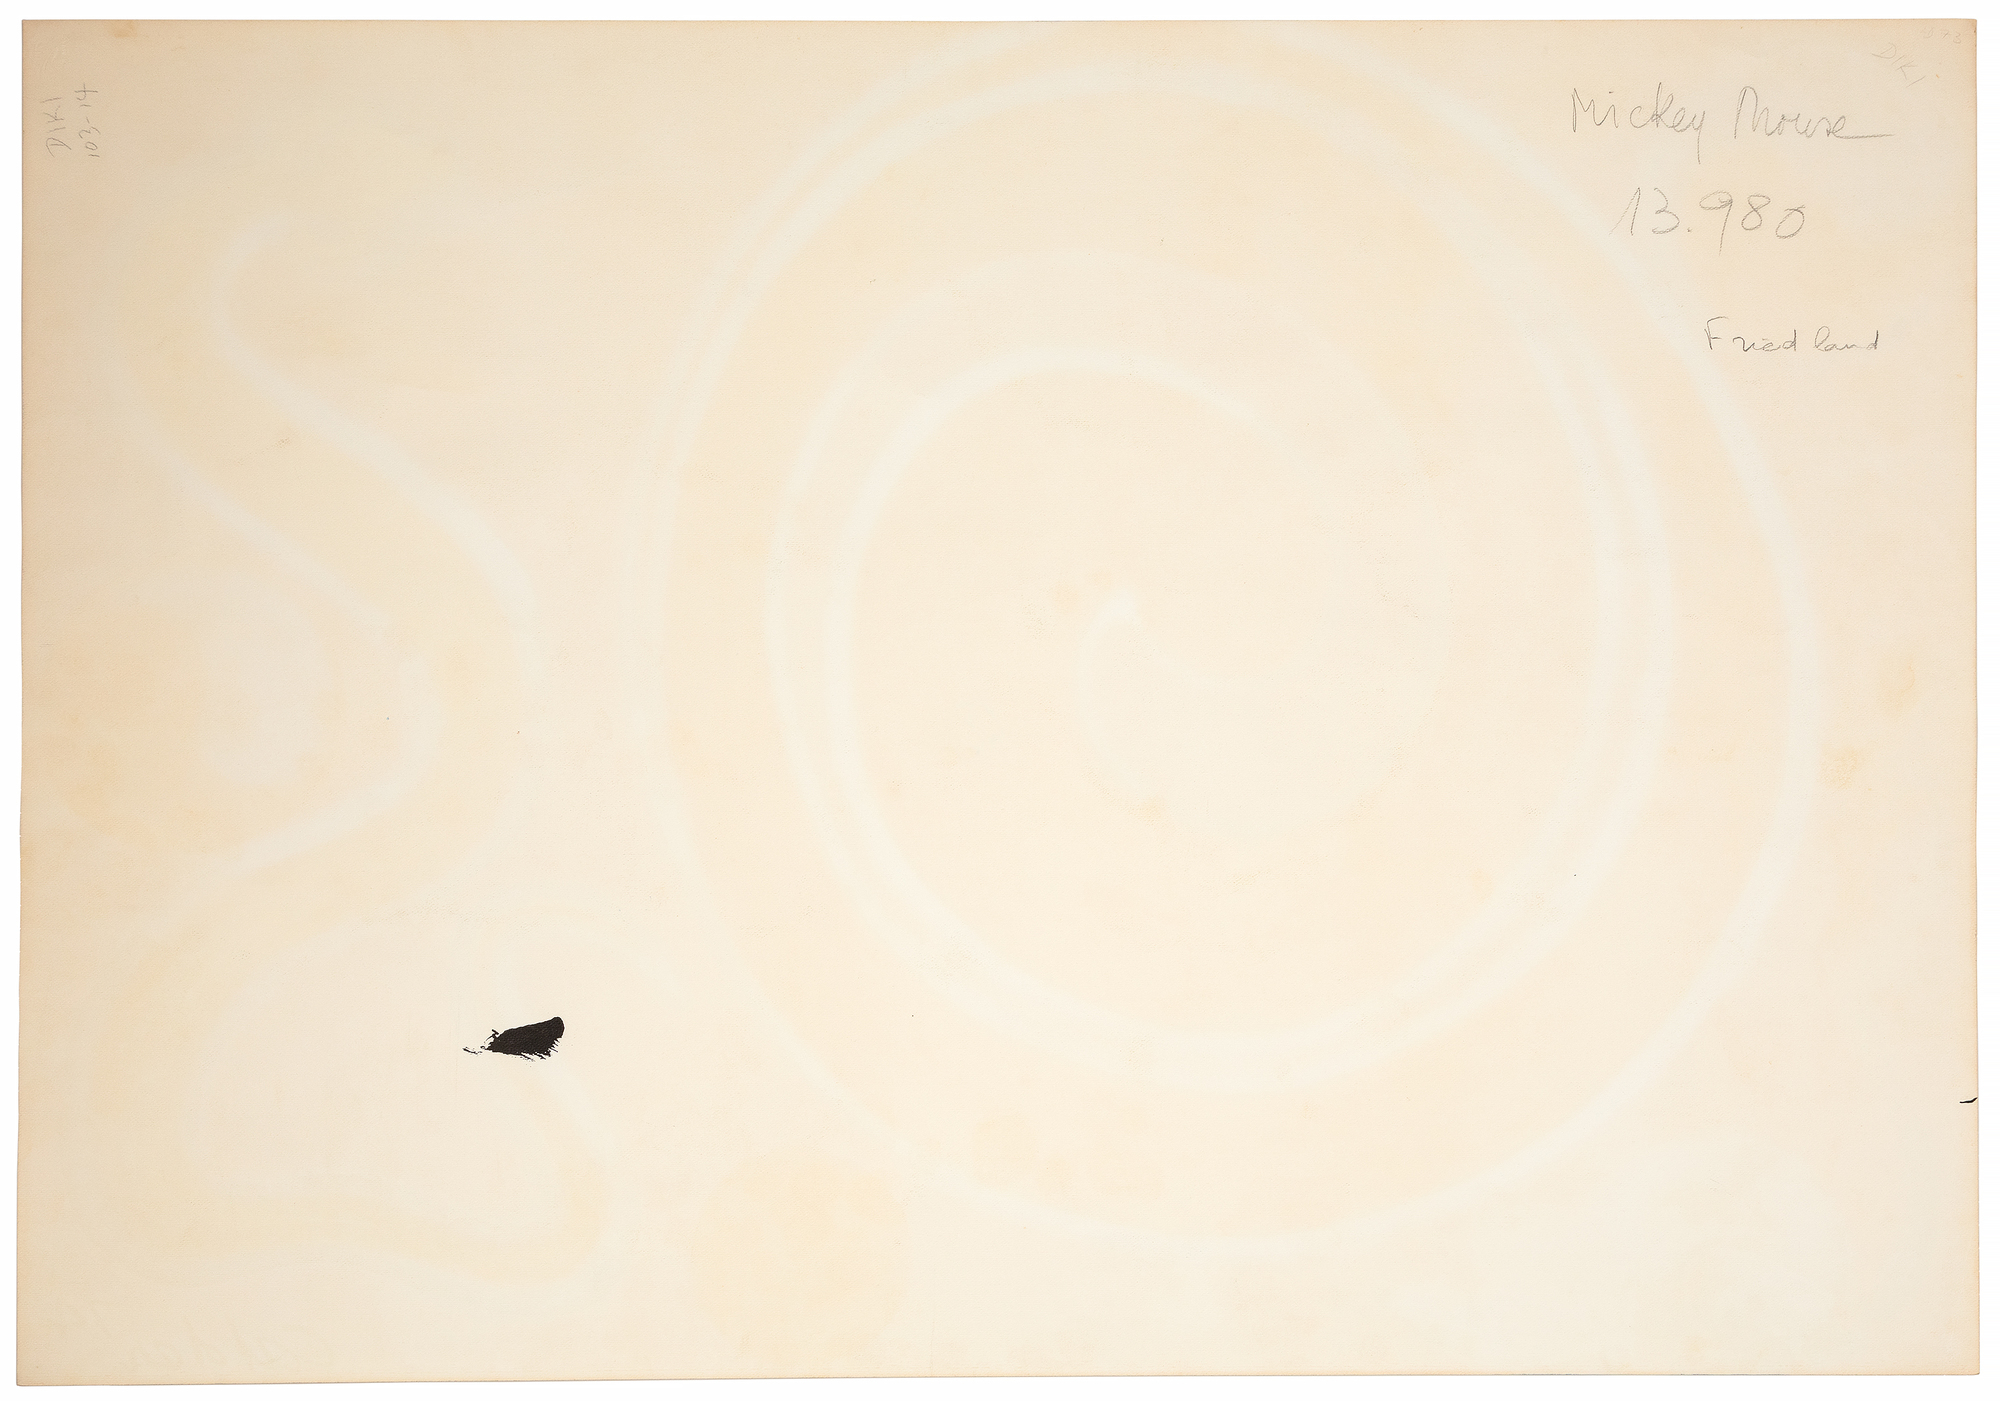 CALDERA DE ALEXANDER - Mickey Mouse - gouache y tinta sobre papel - 30 x 43 3/8 in.